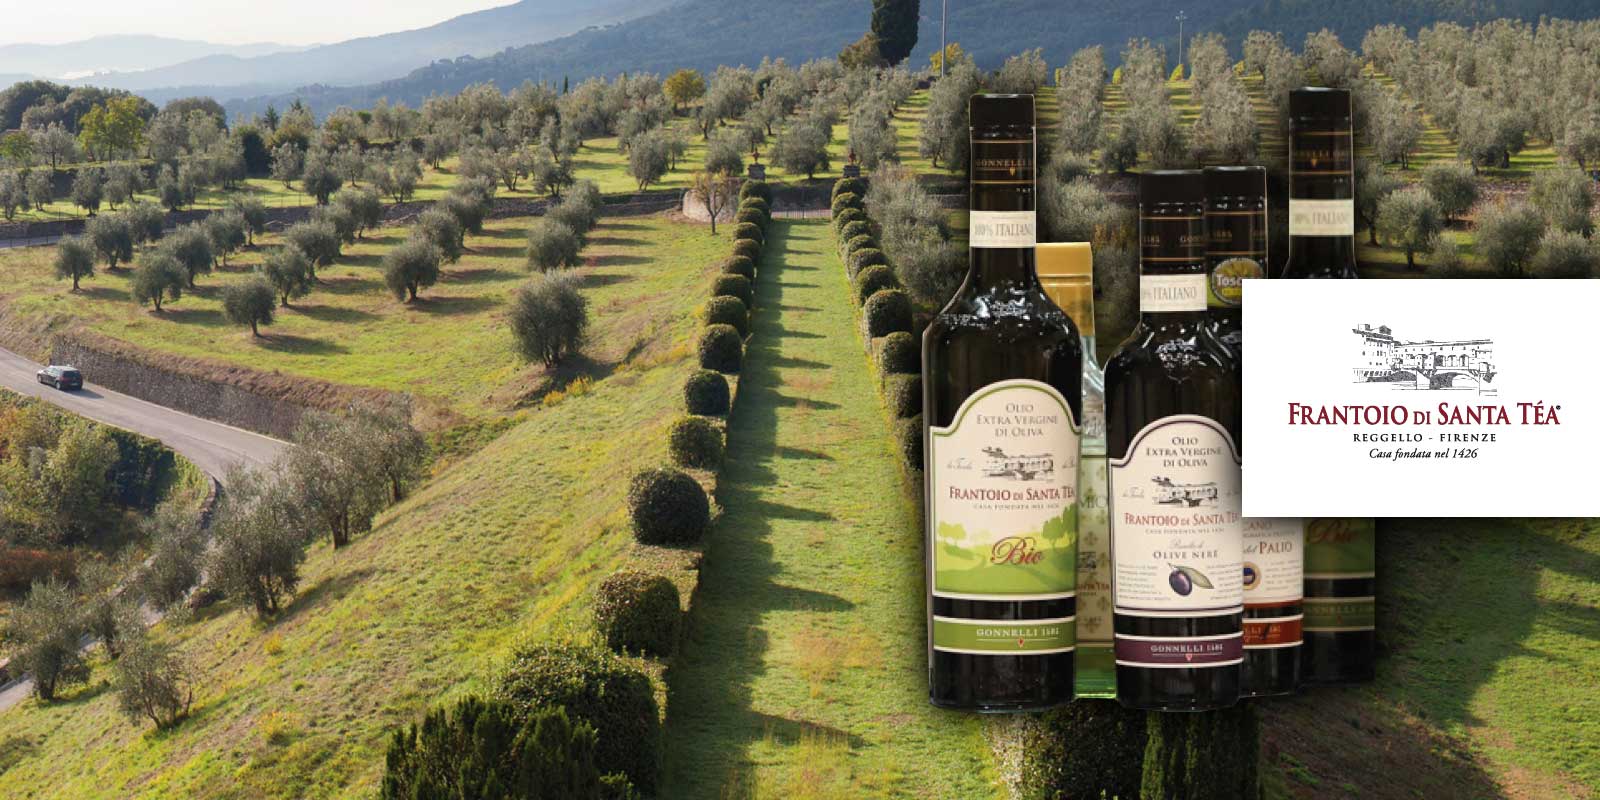 Gonnelli Frantoio di Santa Tea 1585 maslinovo ulje iz Toskane Gonnelli 1585 je brend koji predstavlja odnos izmedu porodice Gonnelli i svijeta tradicionalne proizvodnje ulja. Porodica je 1585. godine kupila farmu Santa Tea i njenu uljaru, izgradenu 1426. godine. Danas je kompanija, vlasnik mlina Vertine u Chianti Classico, jedna od italijanskih izvrsnosti u svijetu djevicanskog maslinovog ulja. Filozofija je oduvijek bila ponuditi zdravo, originalno i prirodno maslinovo ulje.
Gonnelli 1585, koji je postigao nekoliko prekretnica u sektoru i kontinuirano potvrduje vaznost maslinovog ulja kao namirnice s bezbroj nutritivnih i zdravstvenih svojstava, kao i kao nositelja okusa i vrijednosti u svakom jelu i pripremi. Danas Gonnelli 1585 nudi sirok i raznolik asortiman proizvoda s mnogo razlicitih ulja s njihovim razlicitim okusima i aromama.